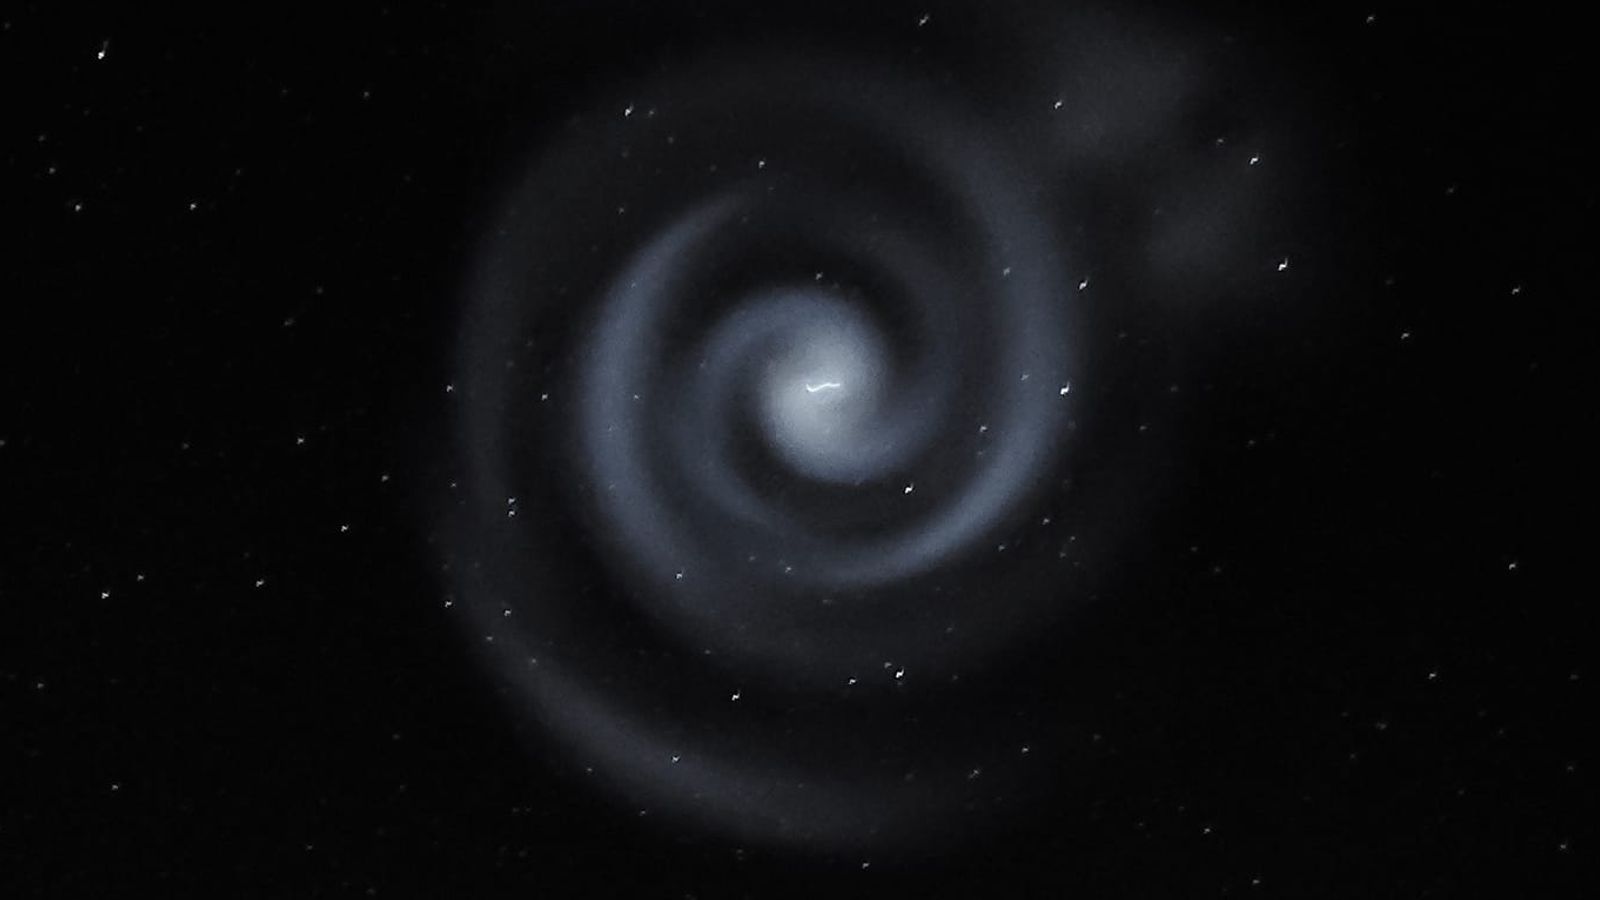 Extraña espiral en cielo nocturno Nueva Zelanda